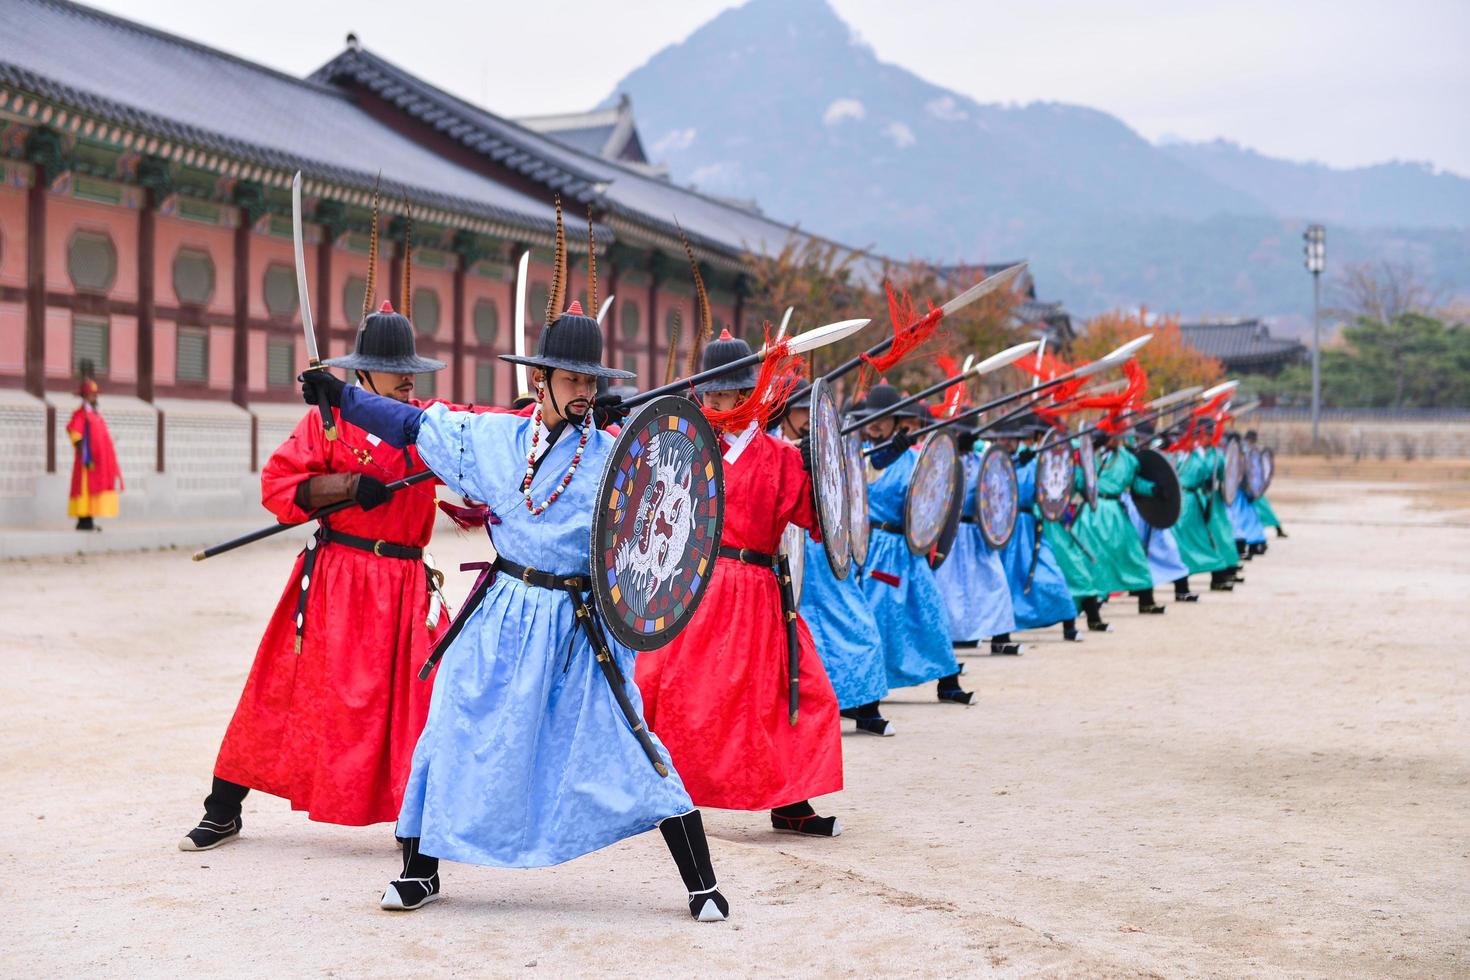 seoul, söder korea - nov 13, 2017-den kunglig vakt-utbildning ceremoni på Gyeongbokgung palats i seoul, korea foto